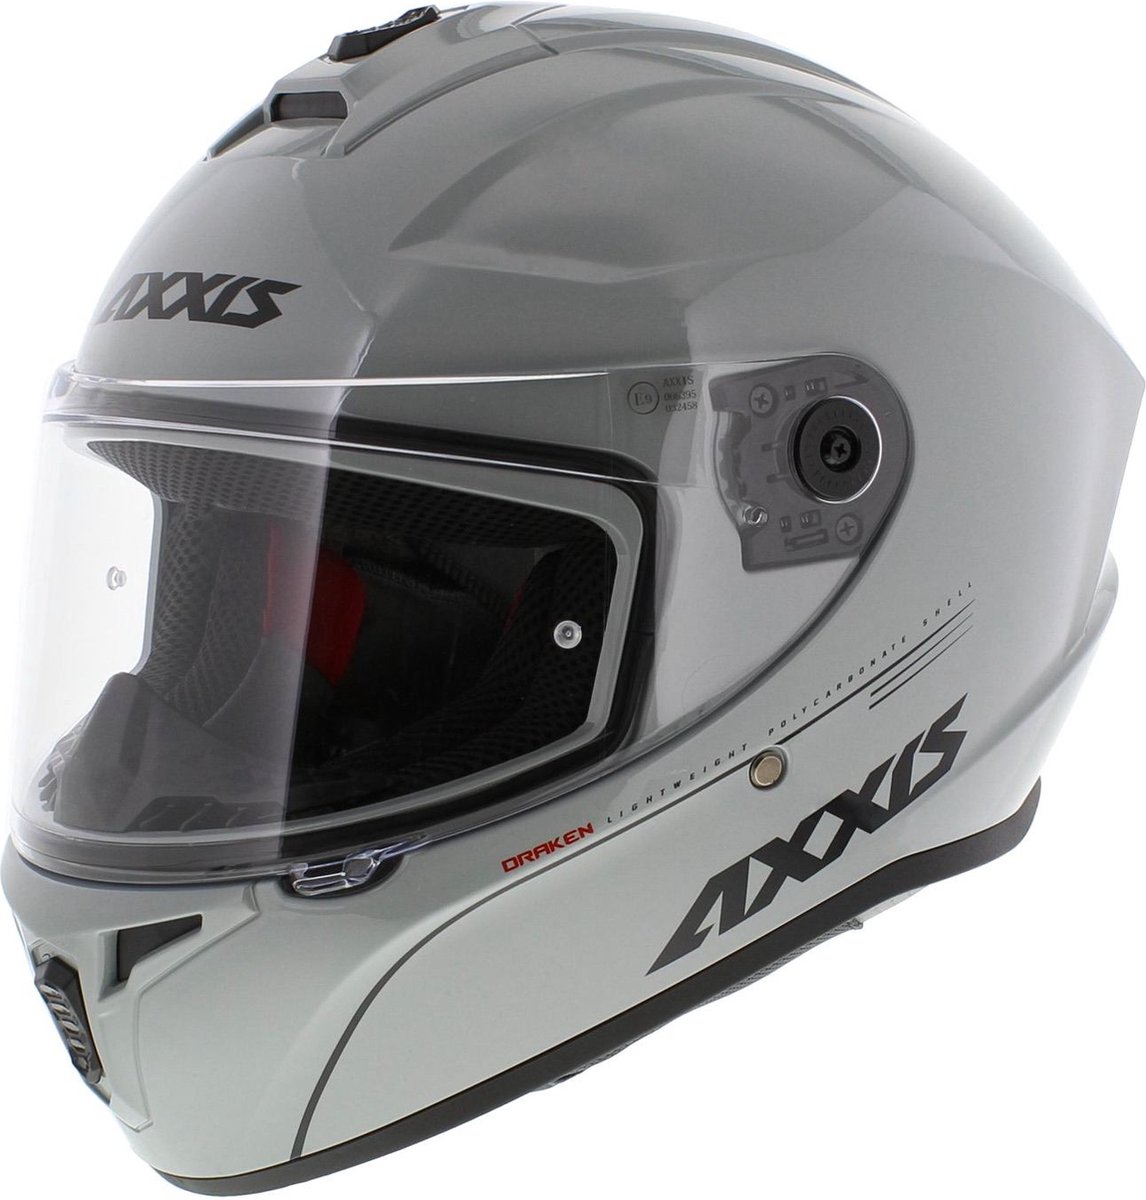 Axxis Draken S integraal helm solid glans grijs S - Motorhelm / Scooterhelm / Karthelm